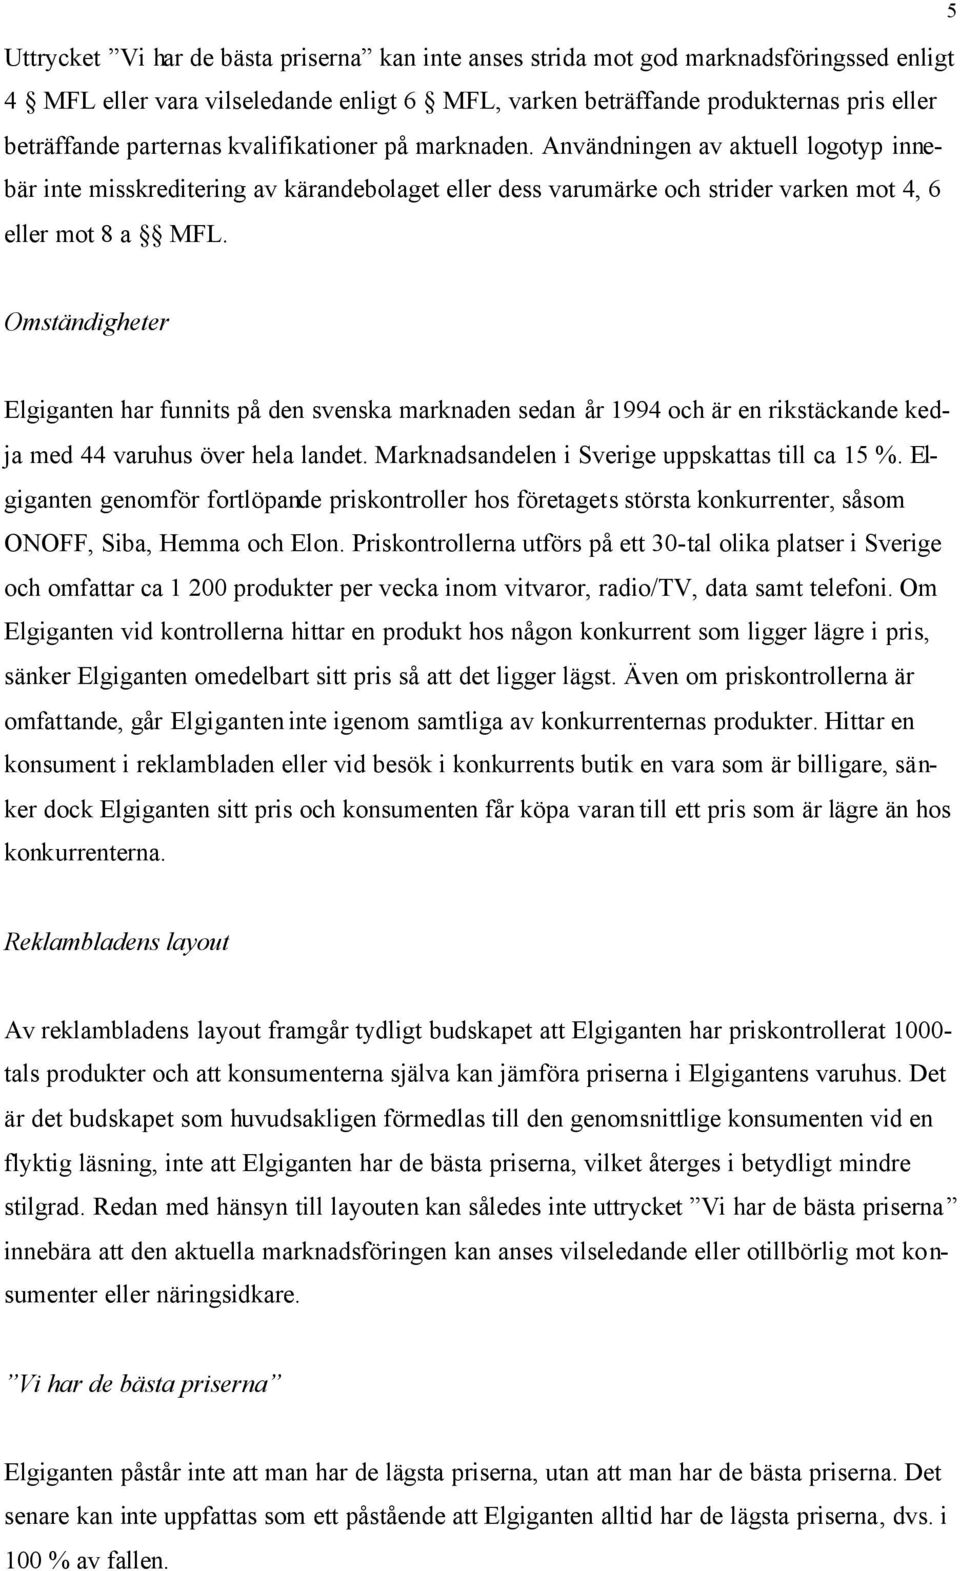 5 Omständigheter Elgiganten har funnits på den svenska marknaden sedan år 1994 och är en rikstäckande kedja med 44 varuhus över hela landet. Marknadsandelen i Sverige uppskattas till ca 15 %.